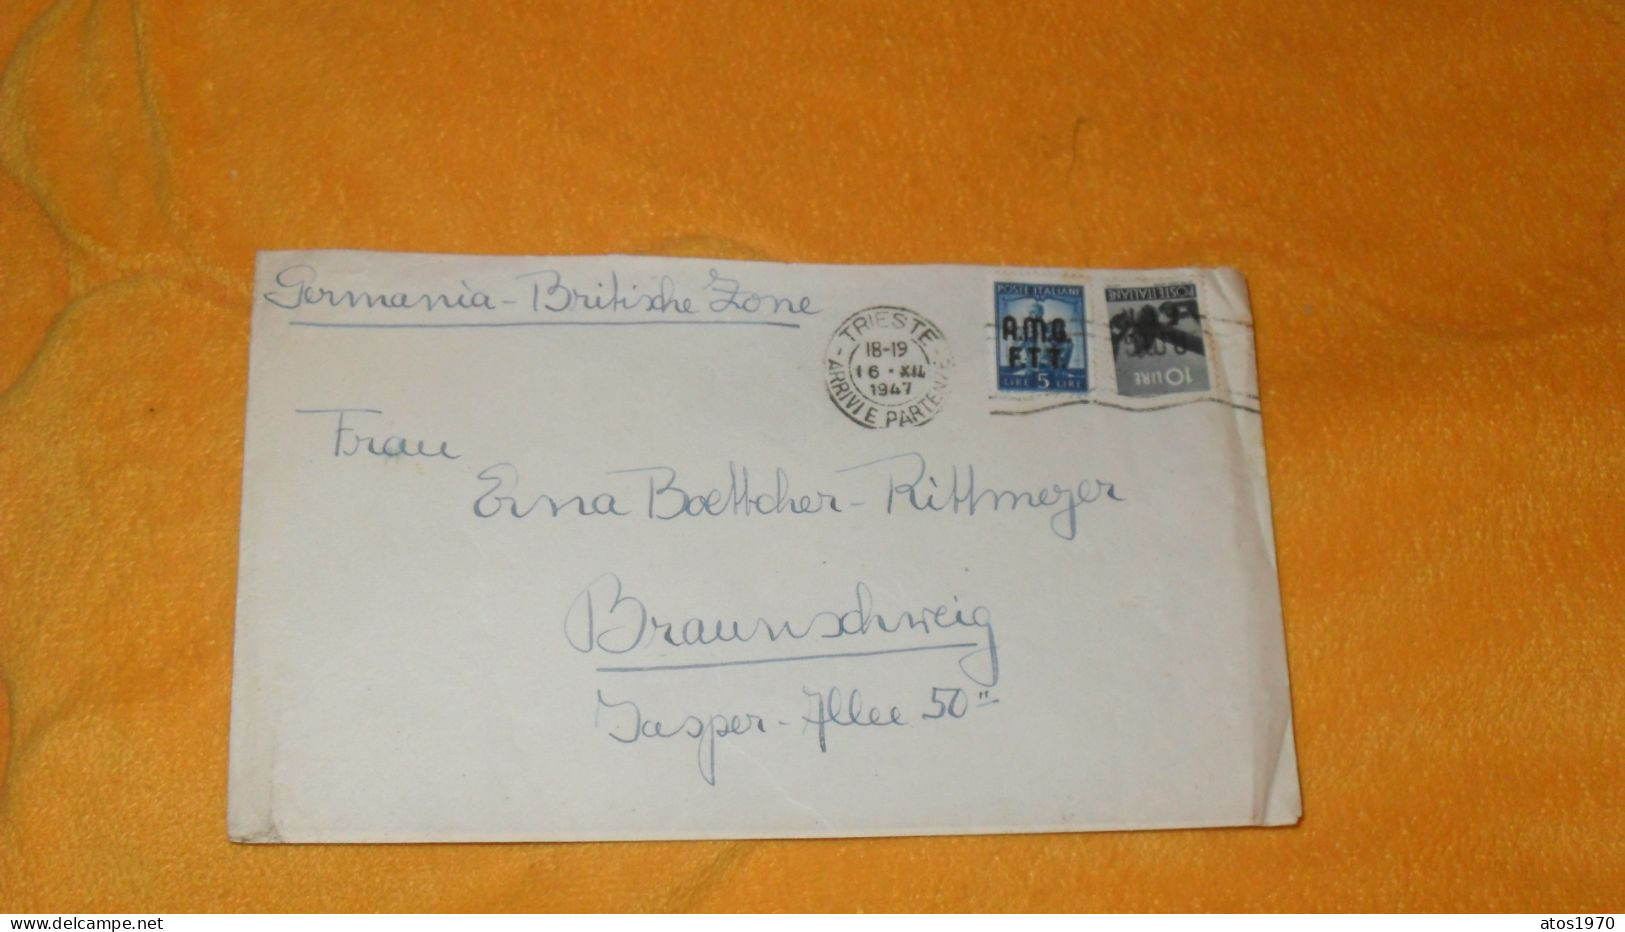 ENVELOPPE ANCIENNE DE 1947../ GERMANIA - BRITISCHE ZONE..CACHETS TRIESTE ARRIVIE PARTENZE + TIMBRES X2 SURCHARGE AMB FTT - Marcofilie